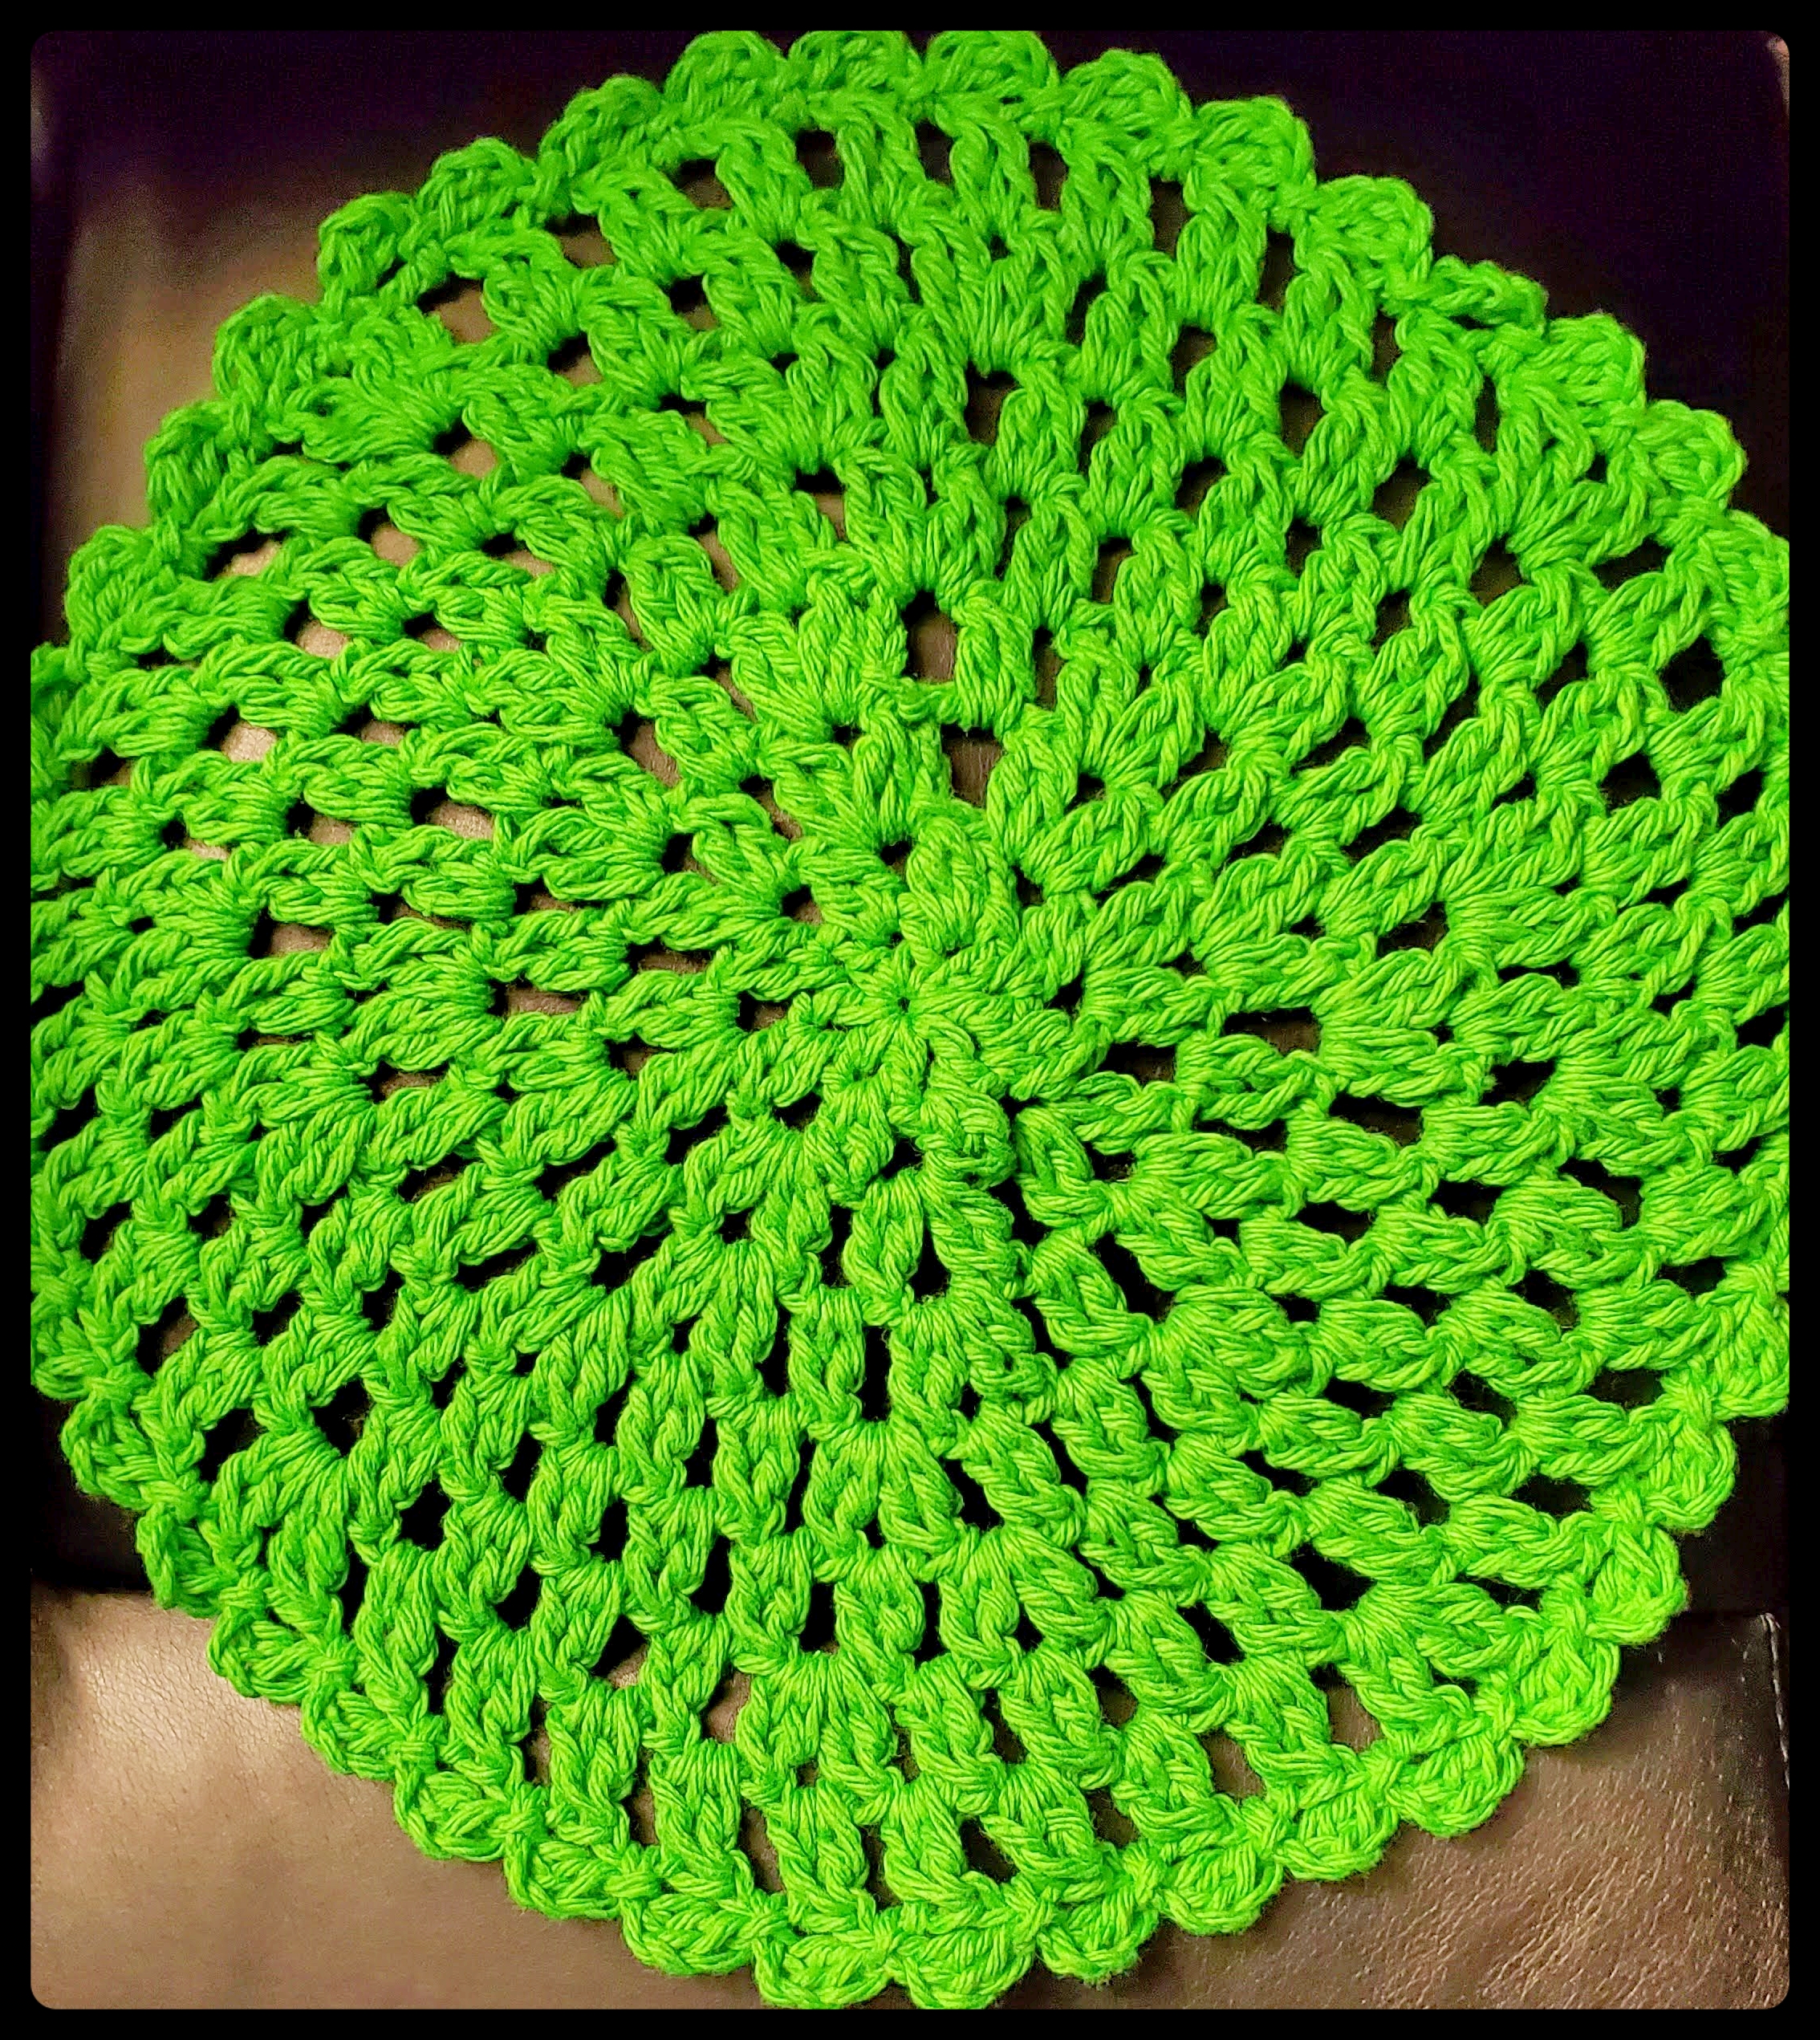 Crochet: Round Dishcloth/Doily (St. Paddy’s Day)